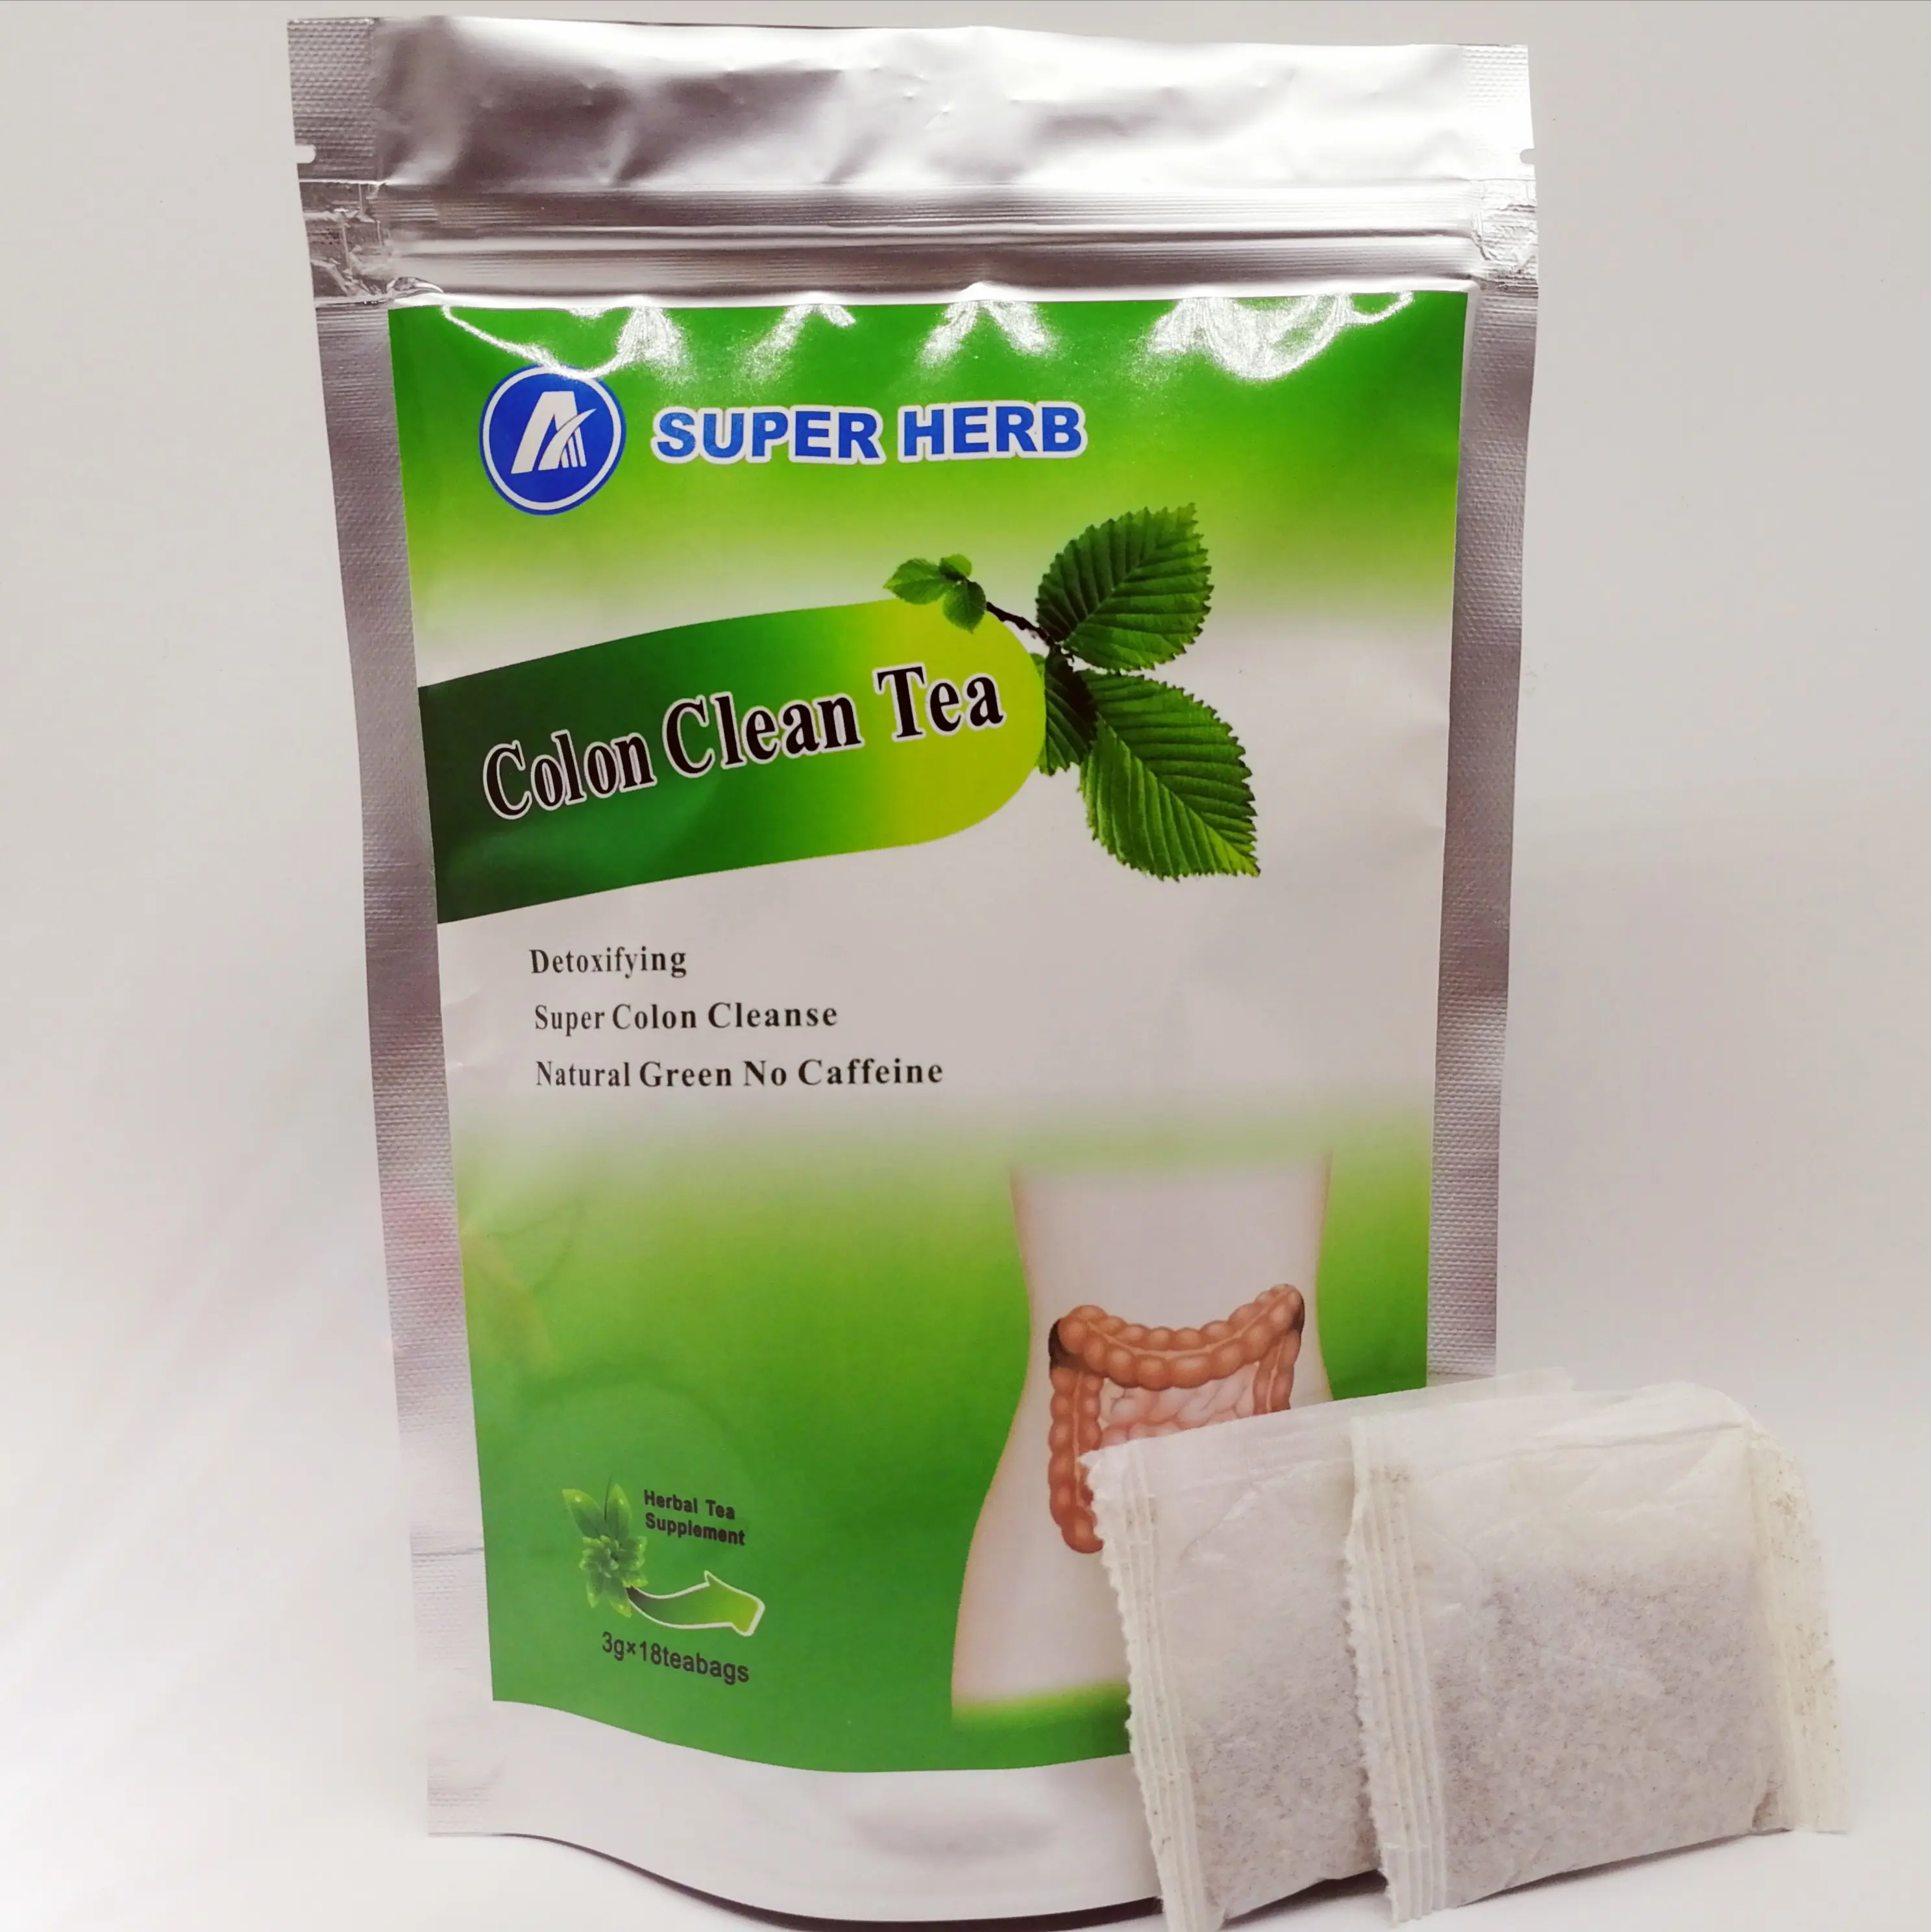 उच्च गुणवत्ता वाली चीनी जड़ी-बूटी चिकित्सा आंतों को साफ़ करने वाली चाय से मूवमेंट को दूर करने में मदद मिलती है